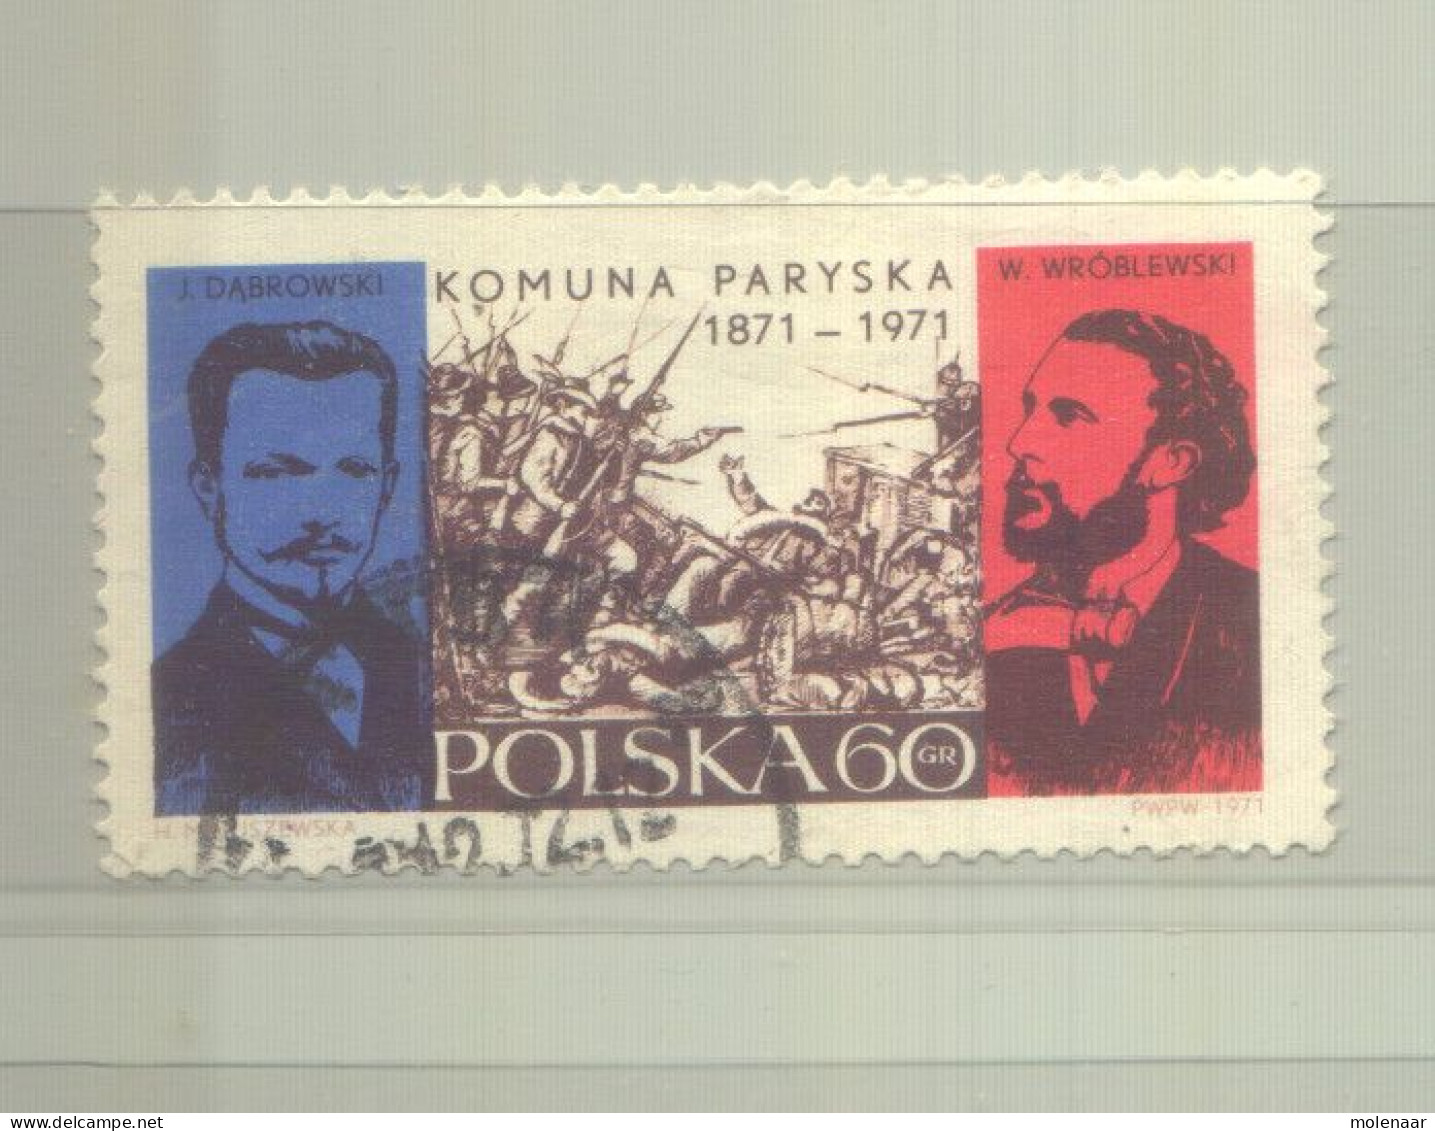 Postzegels > Europa > Polen > 1944-.... Republiek > 1981-90 > Gebruikt 2055 (12191) - Used Stamps